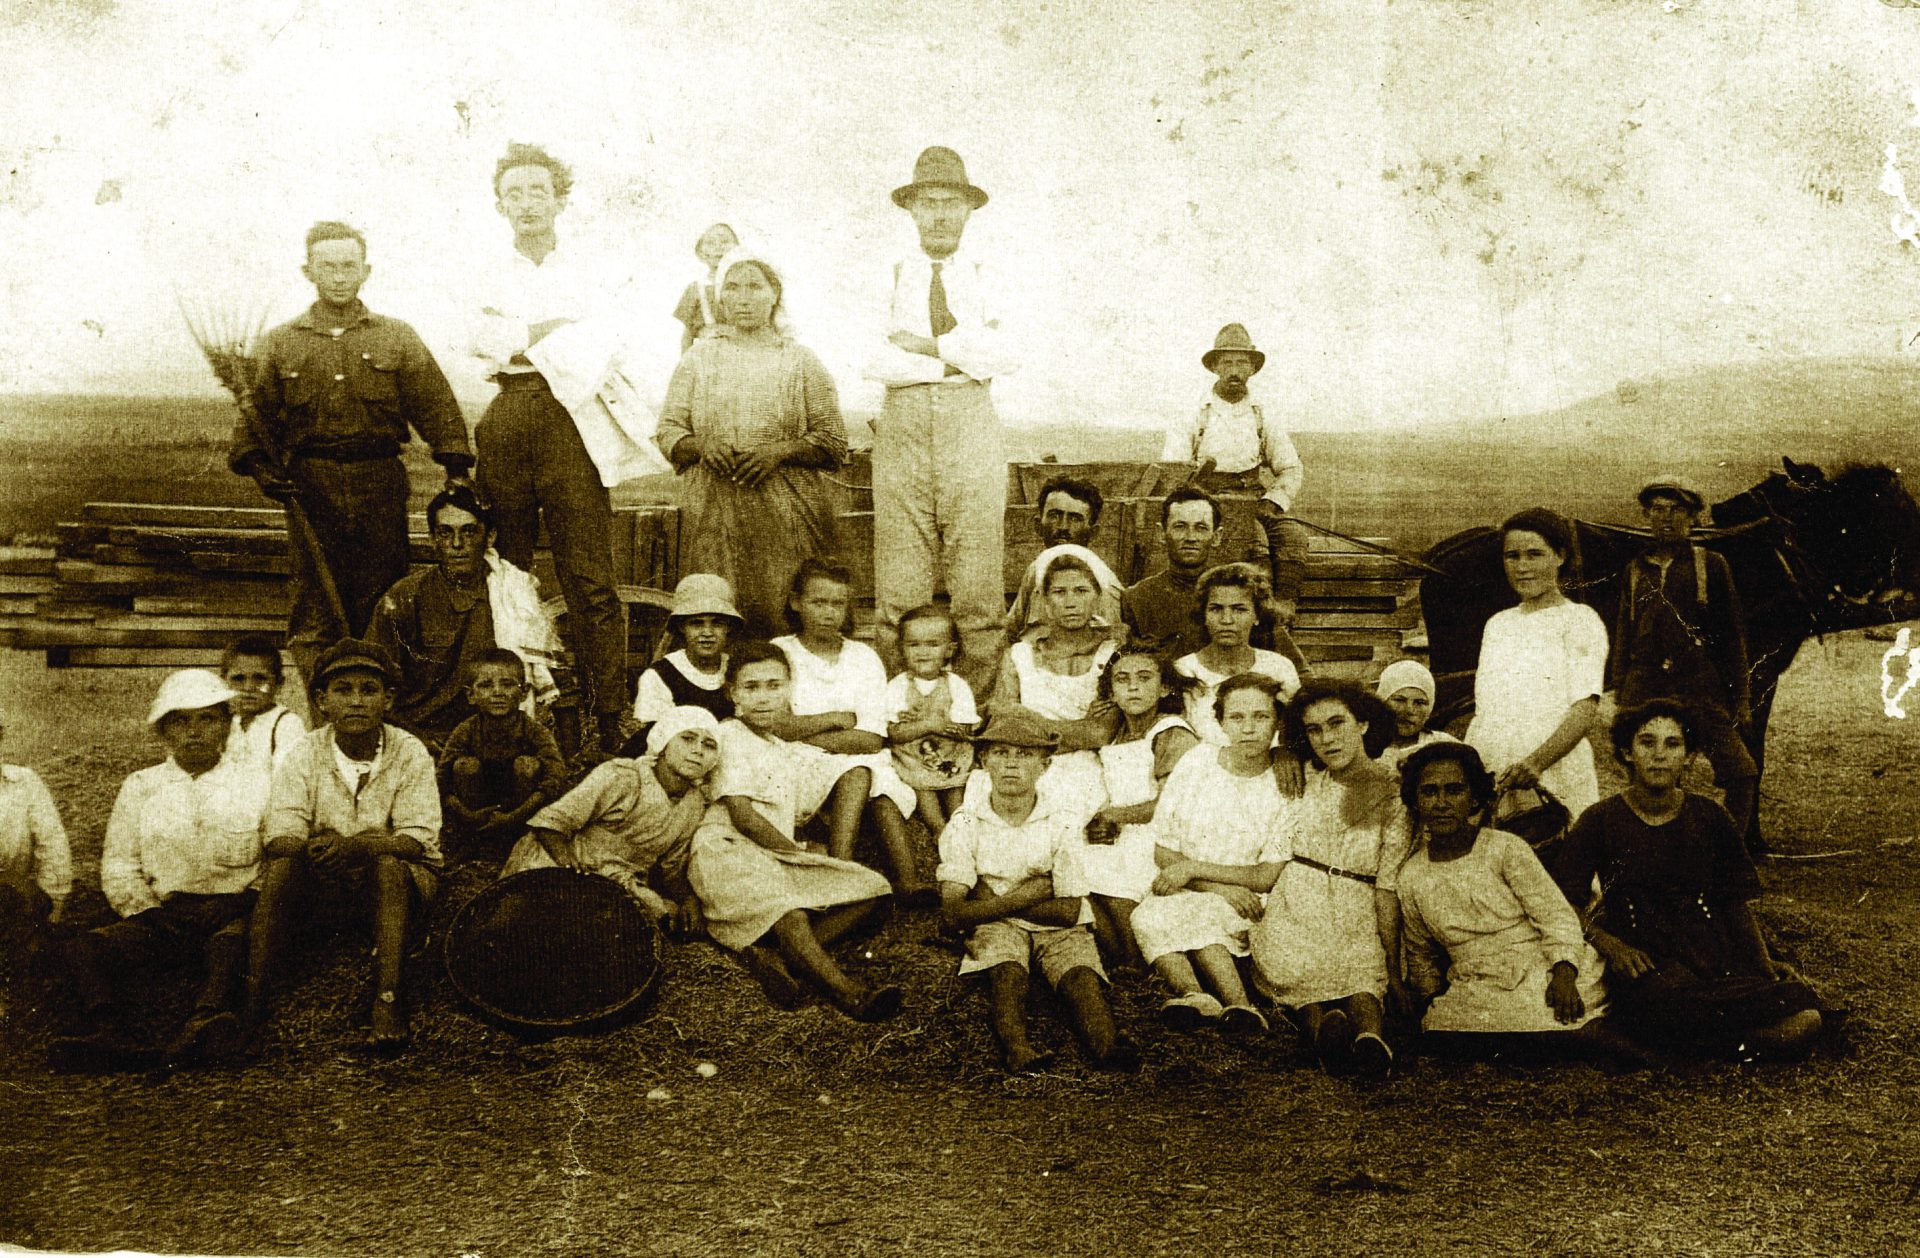 ילדים מורים ואיכרים בגורן בשנת 1920צלם לא ידוע. נמסר על ידי עמי עפרוני ארכיון אילניה